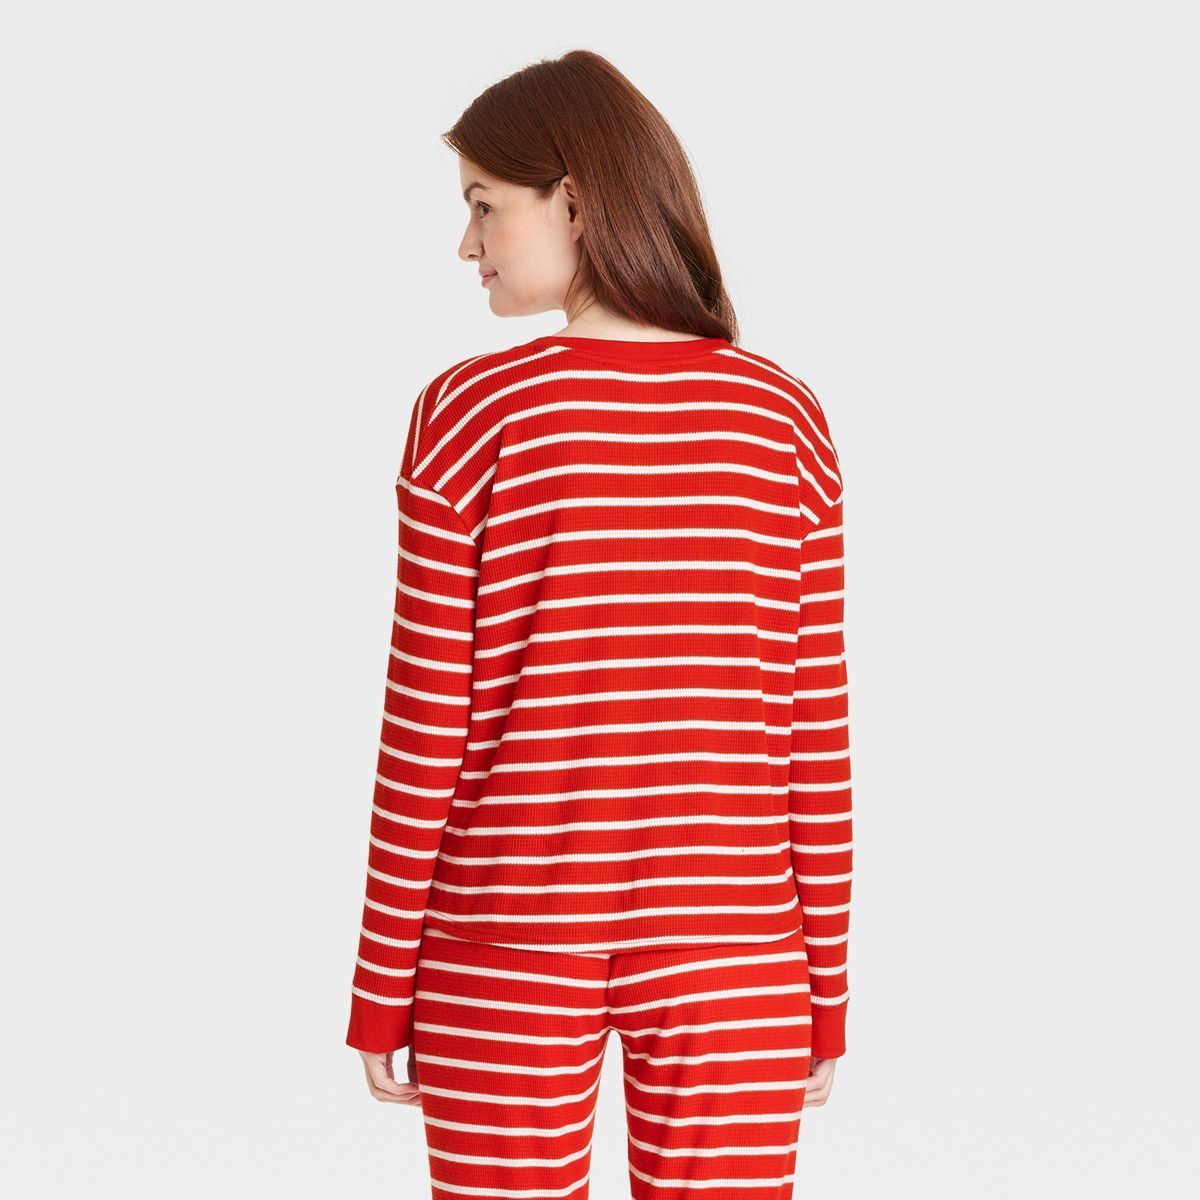 Women's Striped Matching Family Thermal Pajama Top - Wondershop™ Red XS | Target